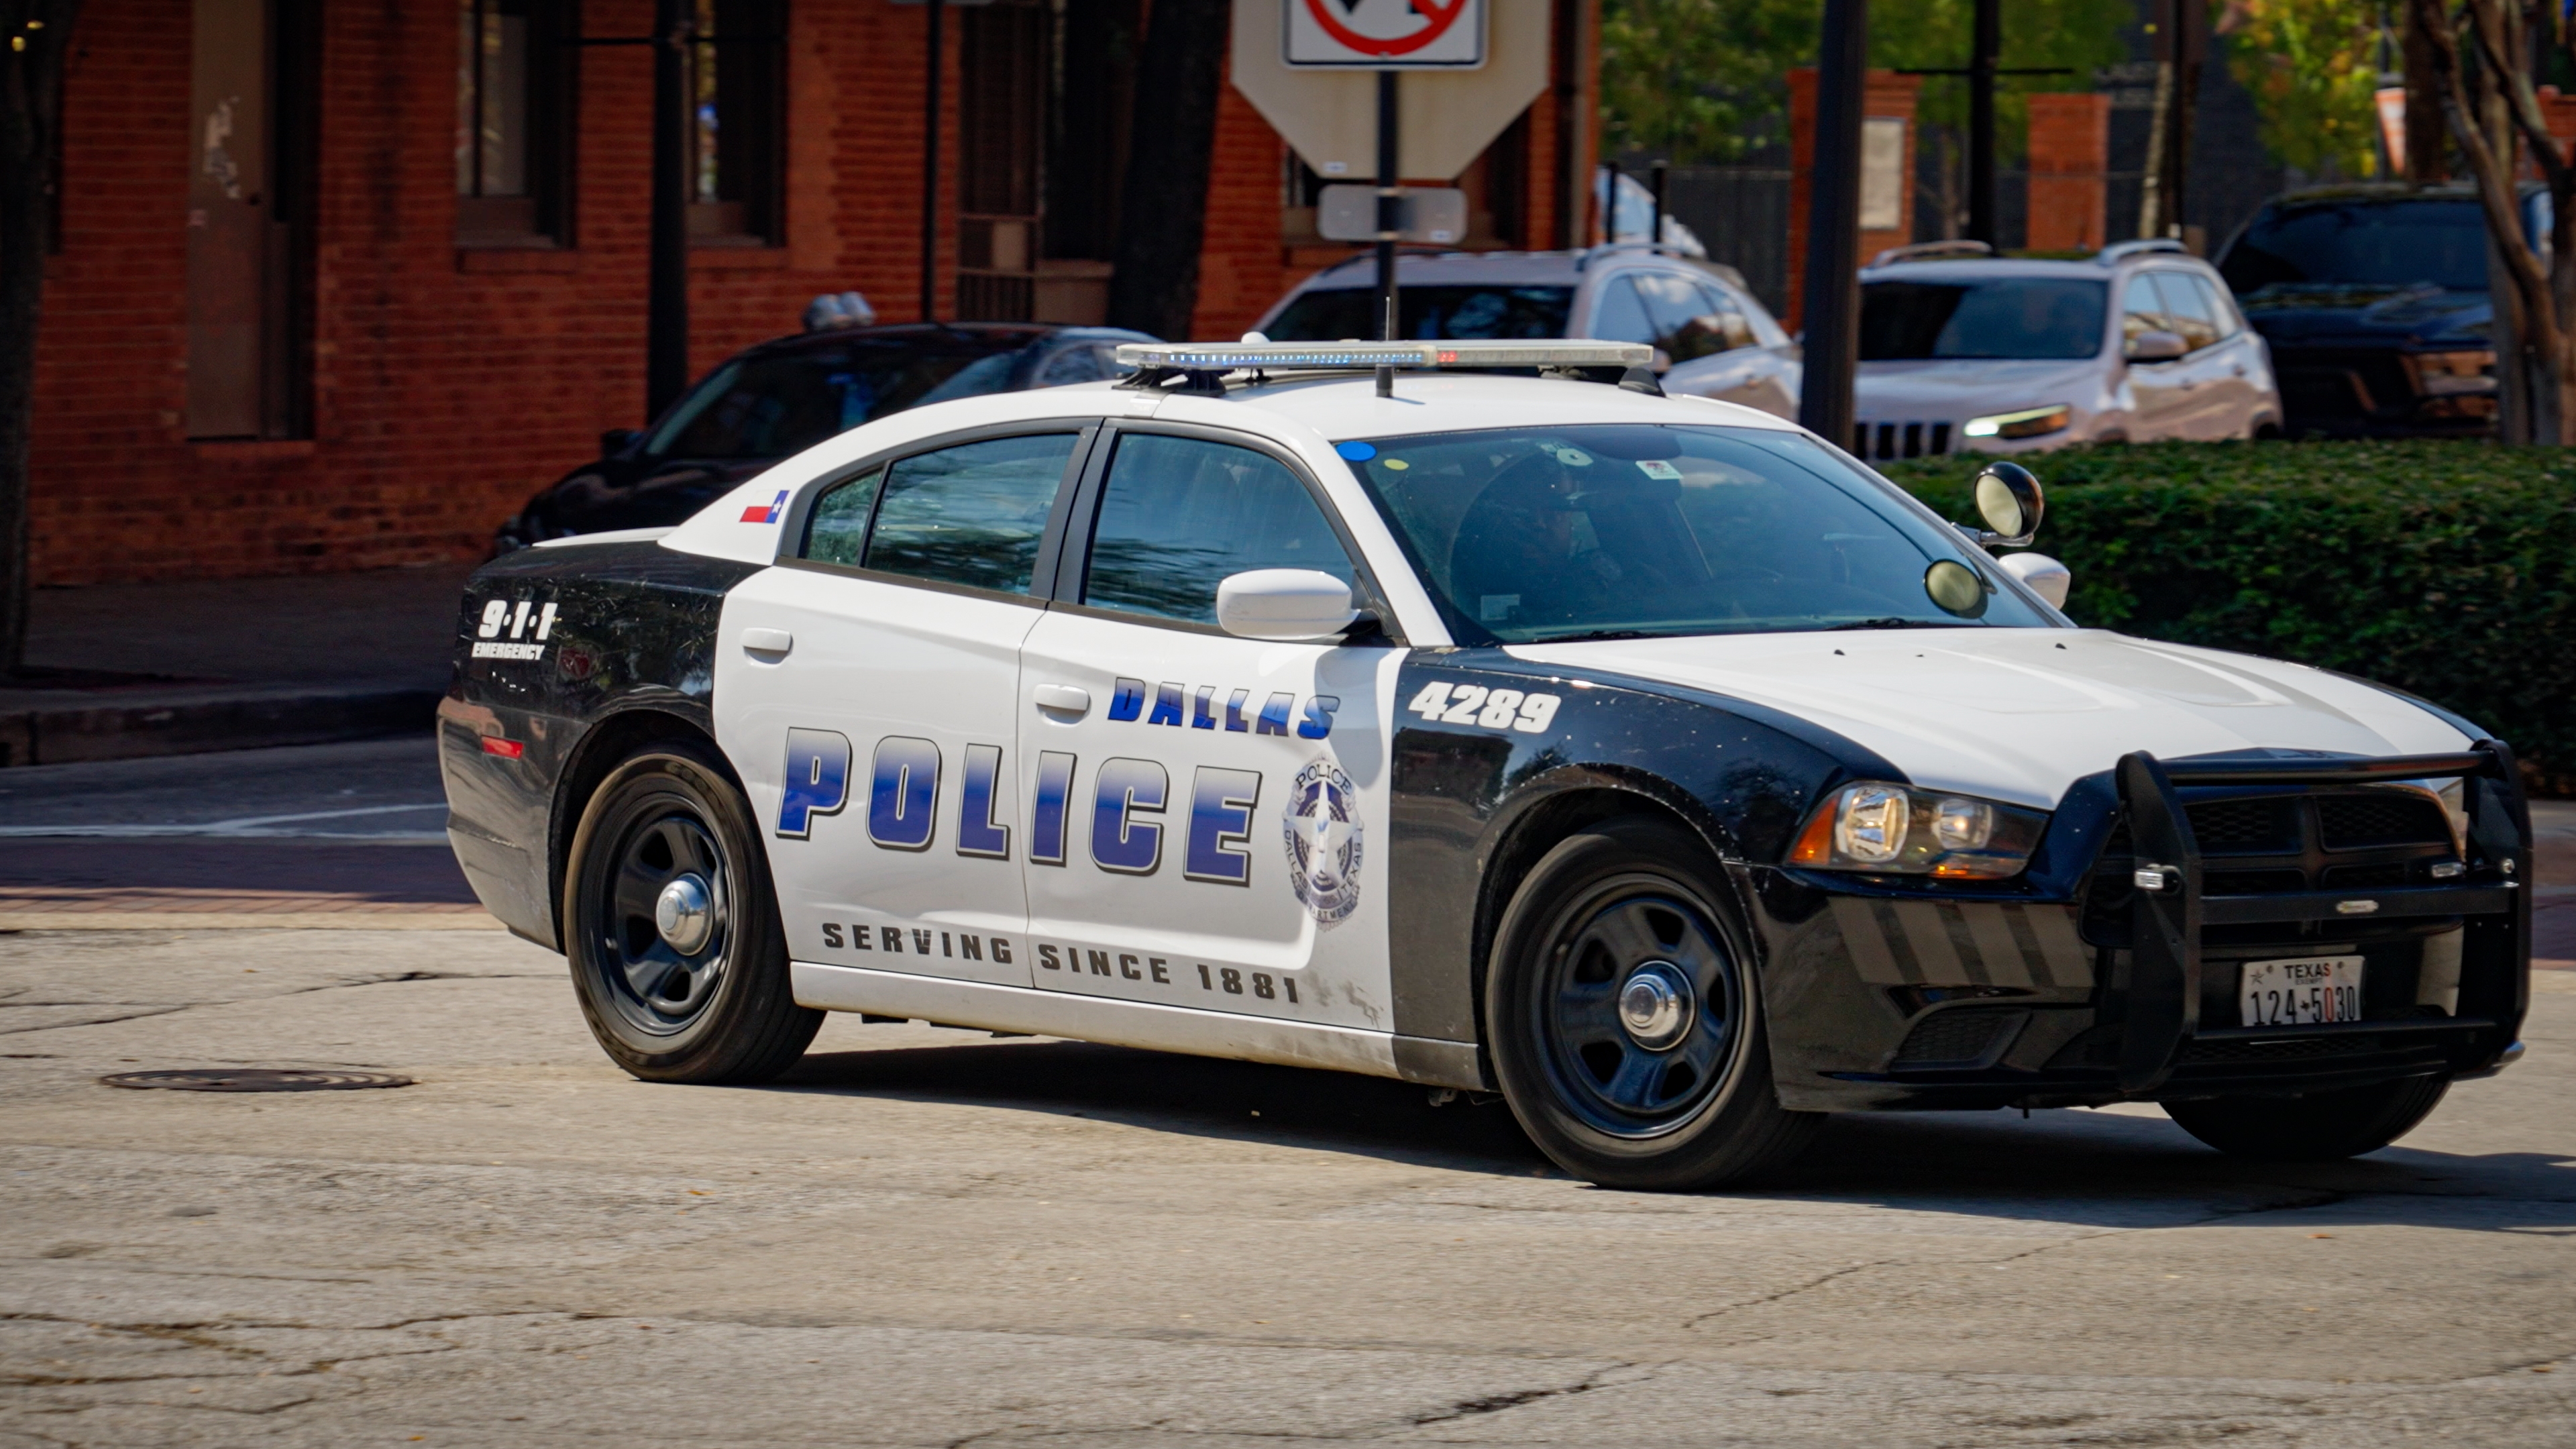 Dallas Police Car on duty | Source: Shutterstock